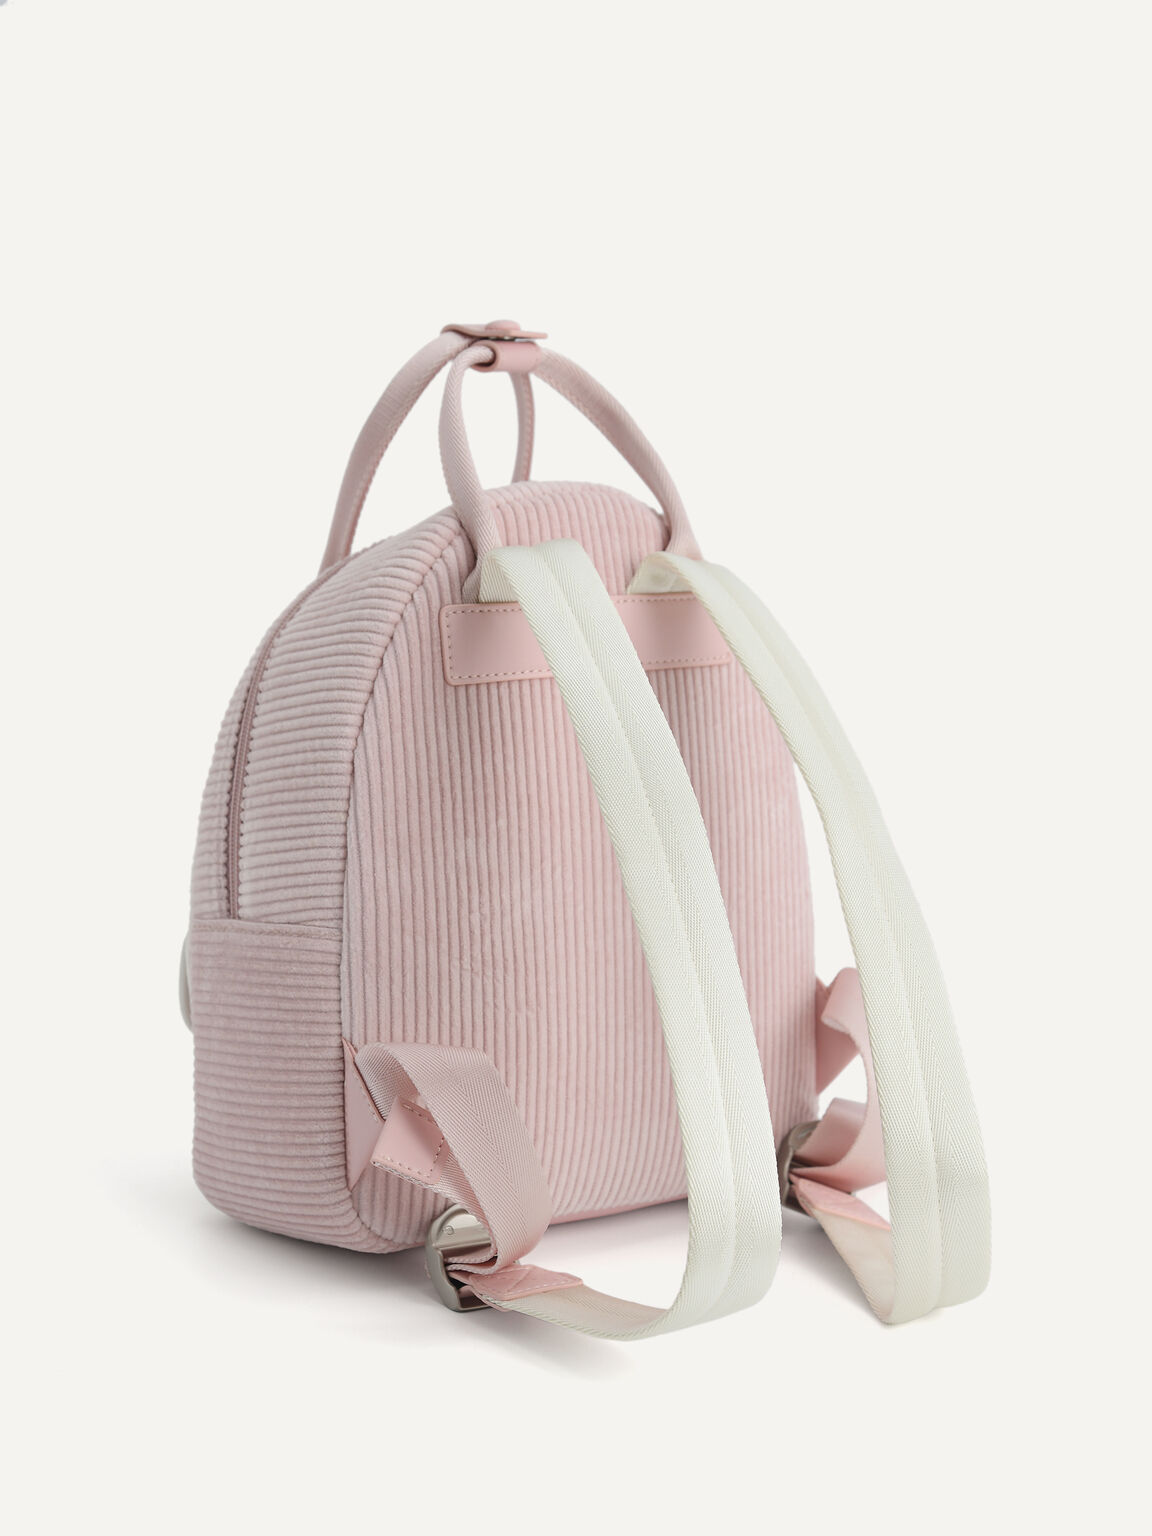 Corduroy Backpack, Light Pink, hi-res